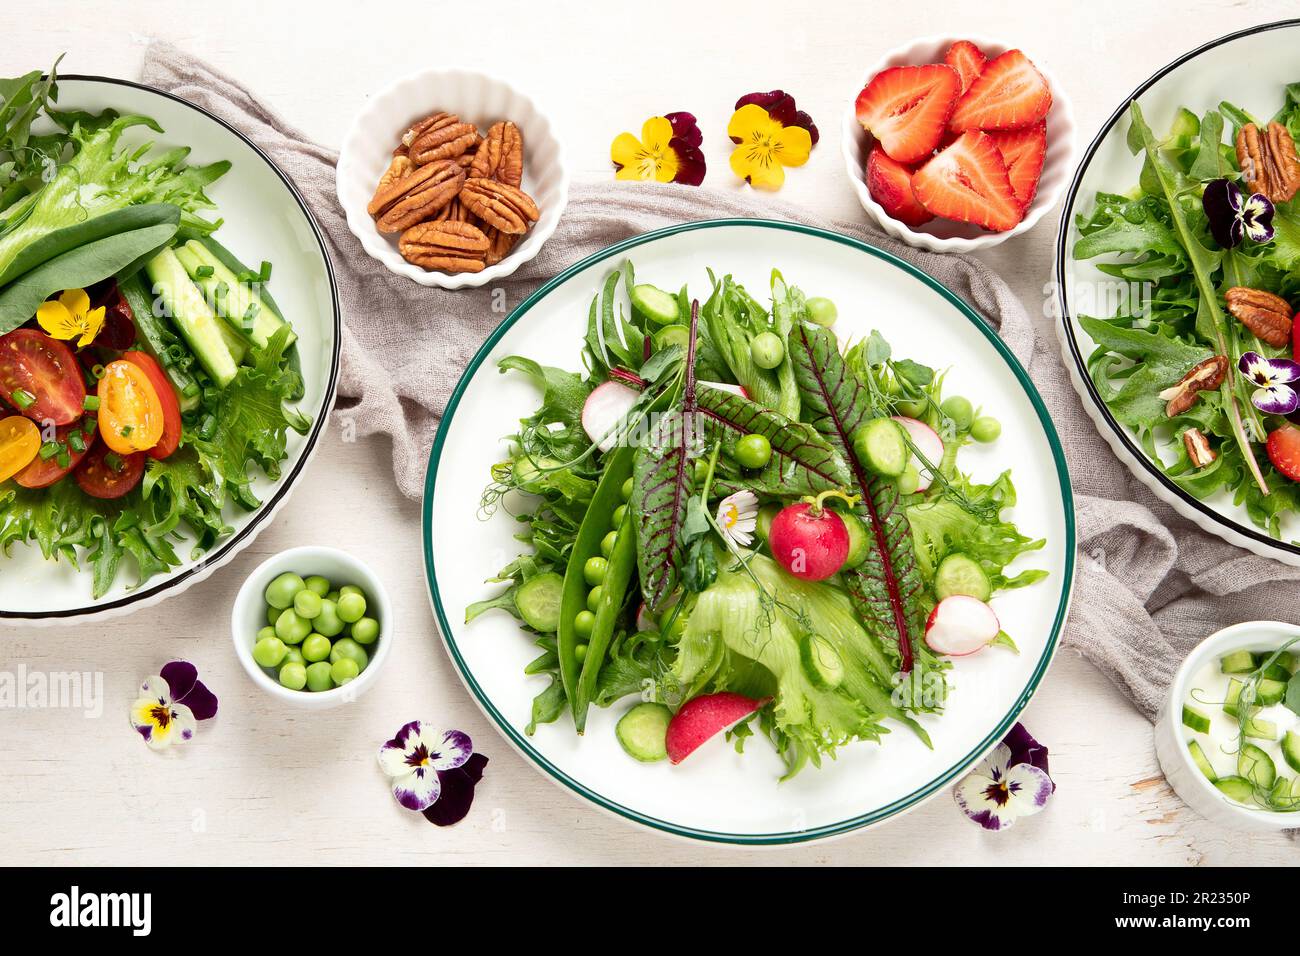 Köstliche Frühlingssalate mit essbaren Blumen, Gemüse, Obst, Mikrogreens und Käse auf weißem Hintergrund. Konzept der sauberen und gesunden Ernährung. Oben vi Stockfoto